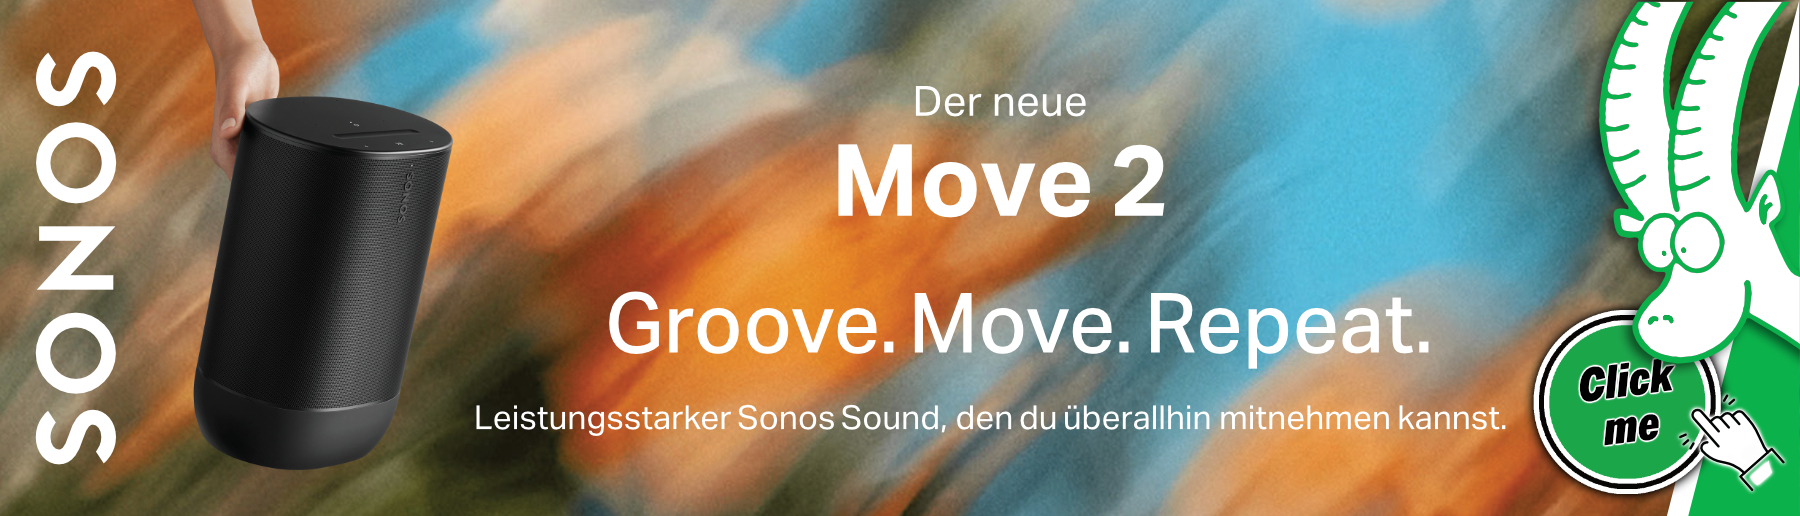 SONOS Move 2